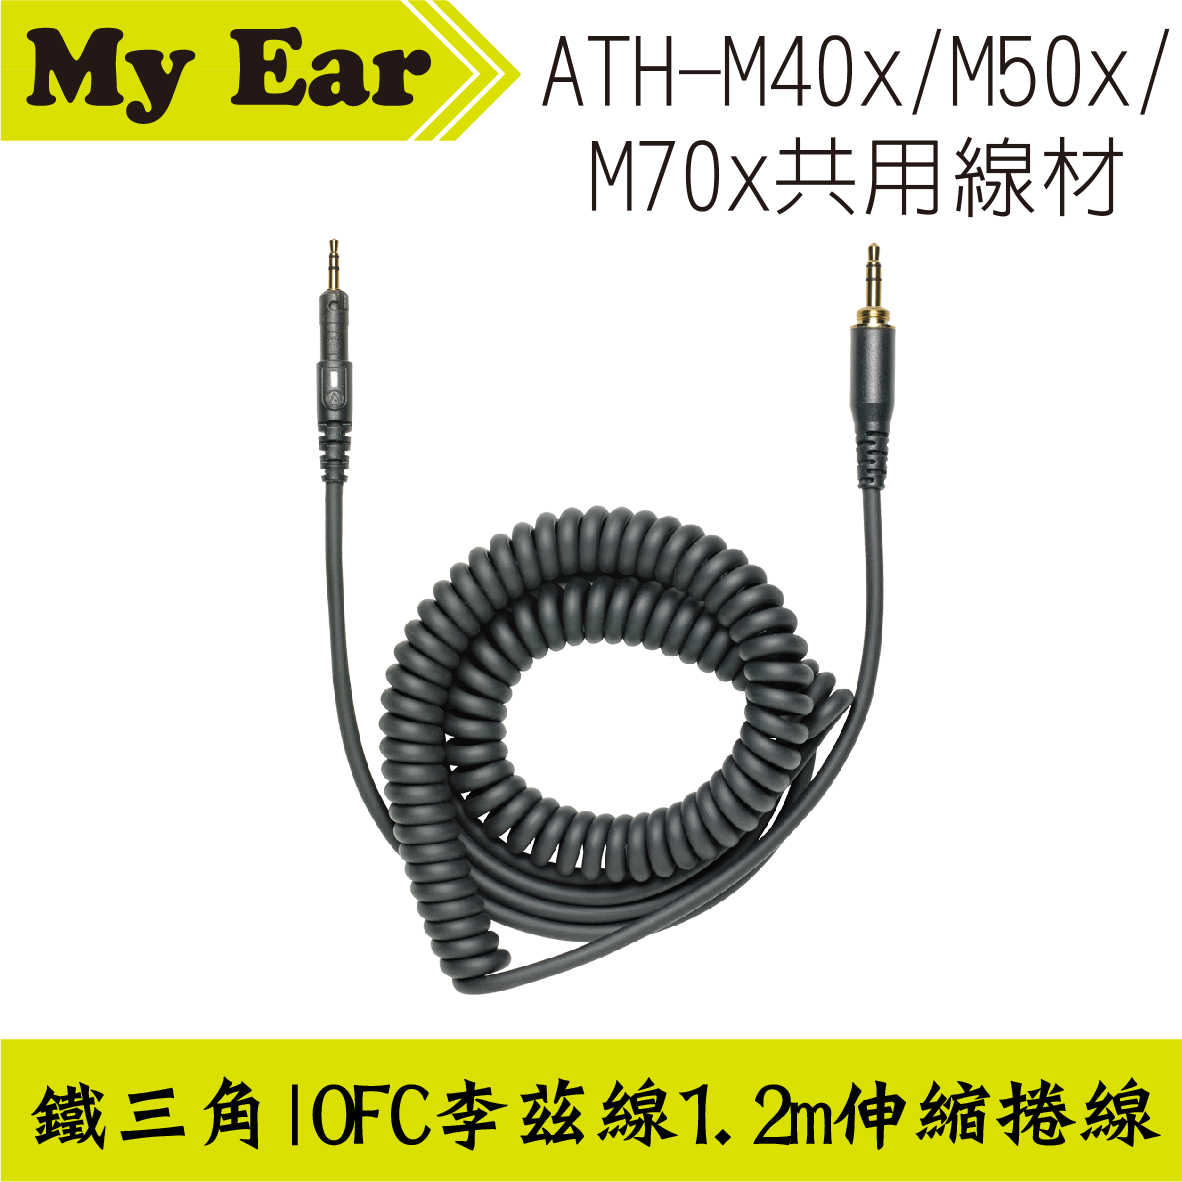 鐵三角 ATH-M40x M50x M70x 適用 可拆式伸縮捲線 1.2m | My Ear 耳機專門店